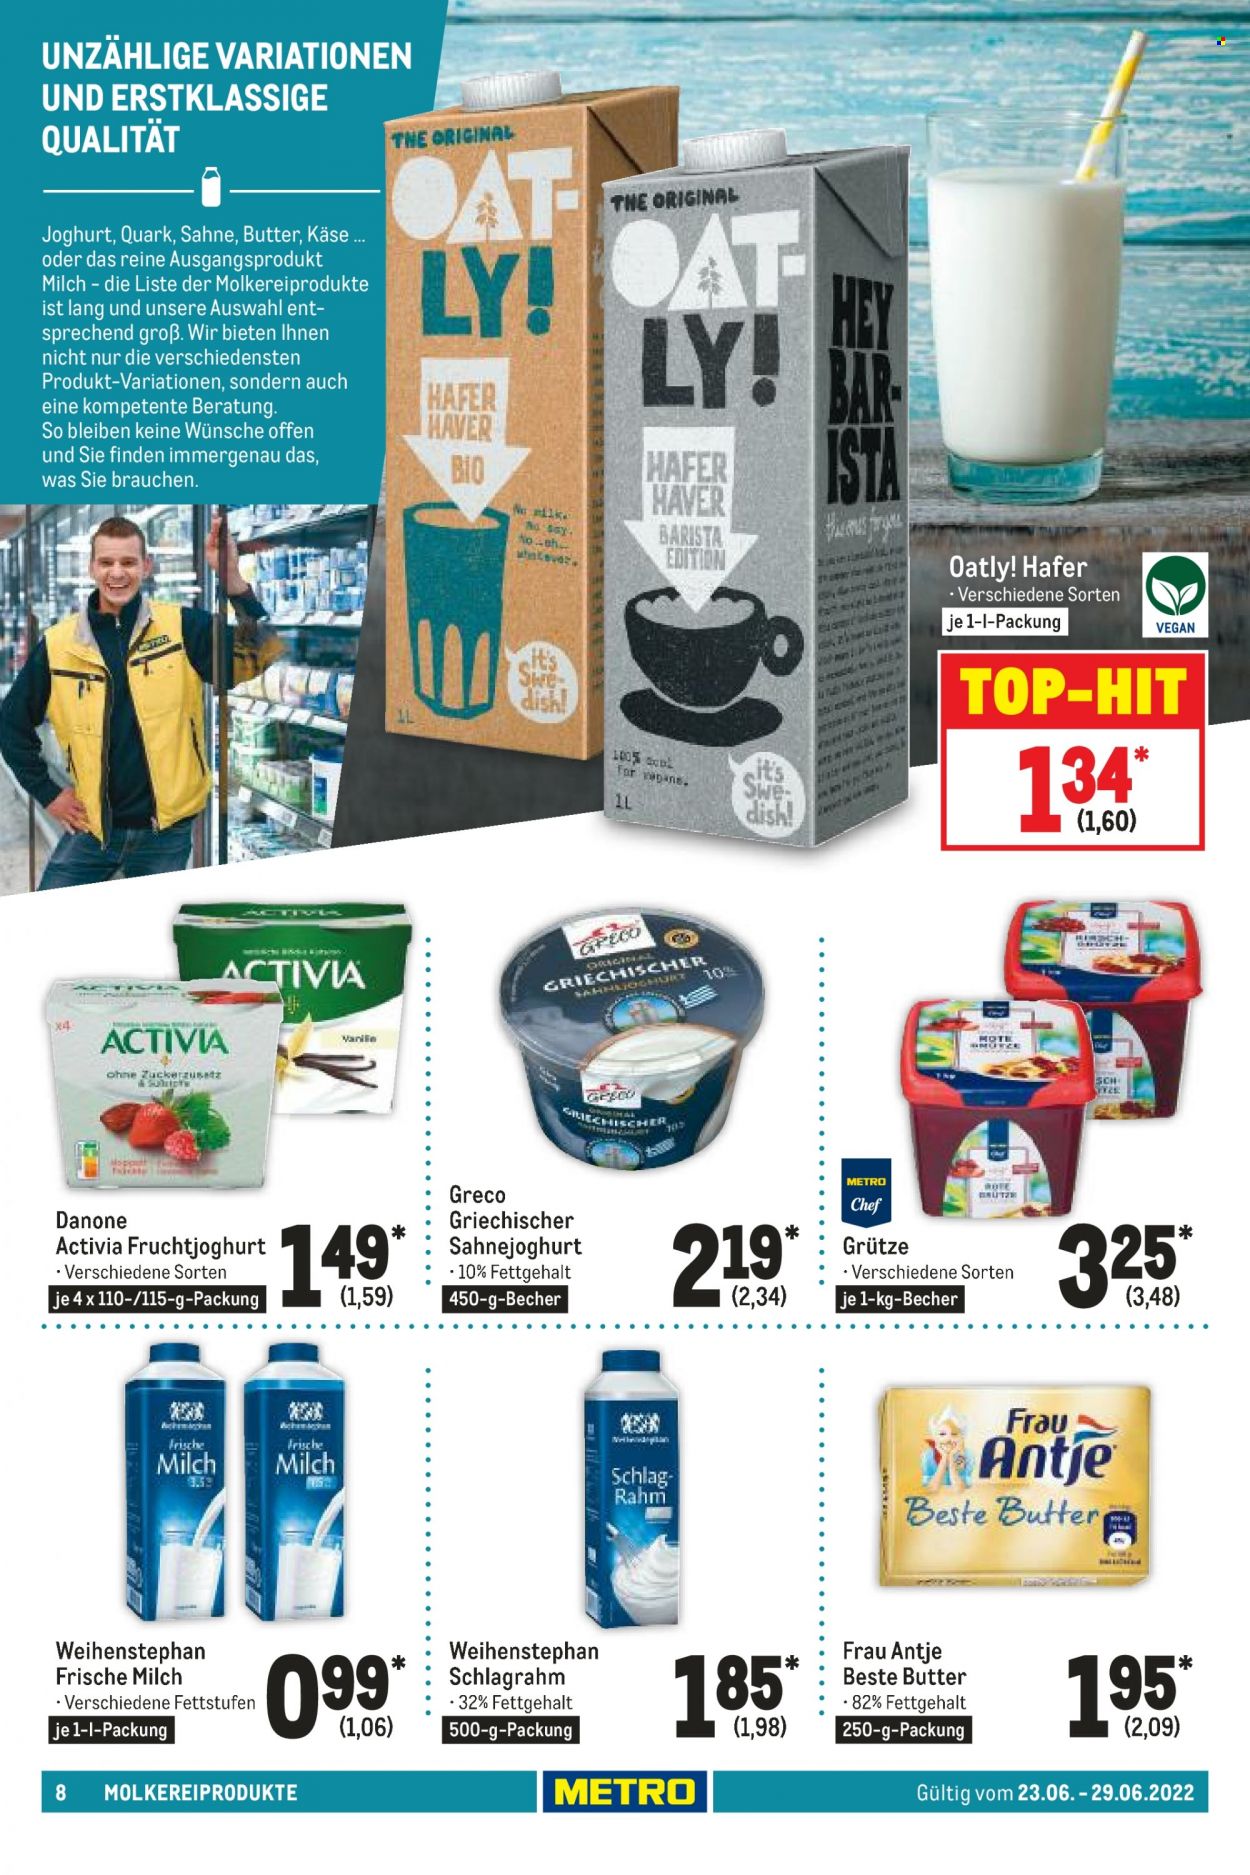 thumbnail - Prospekte Metro - 23.06.2022 - 29.06.2022 - Produkte in Aktion - Weihenstephan, Käse, Danone, Sahnejoghurt, Joghurt, Activia, Fruchtjoghurt, frische Milch, Butter, Sahne. Seite 8.